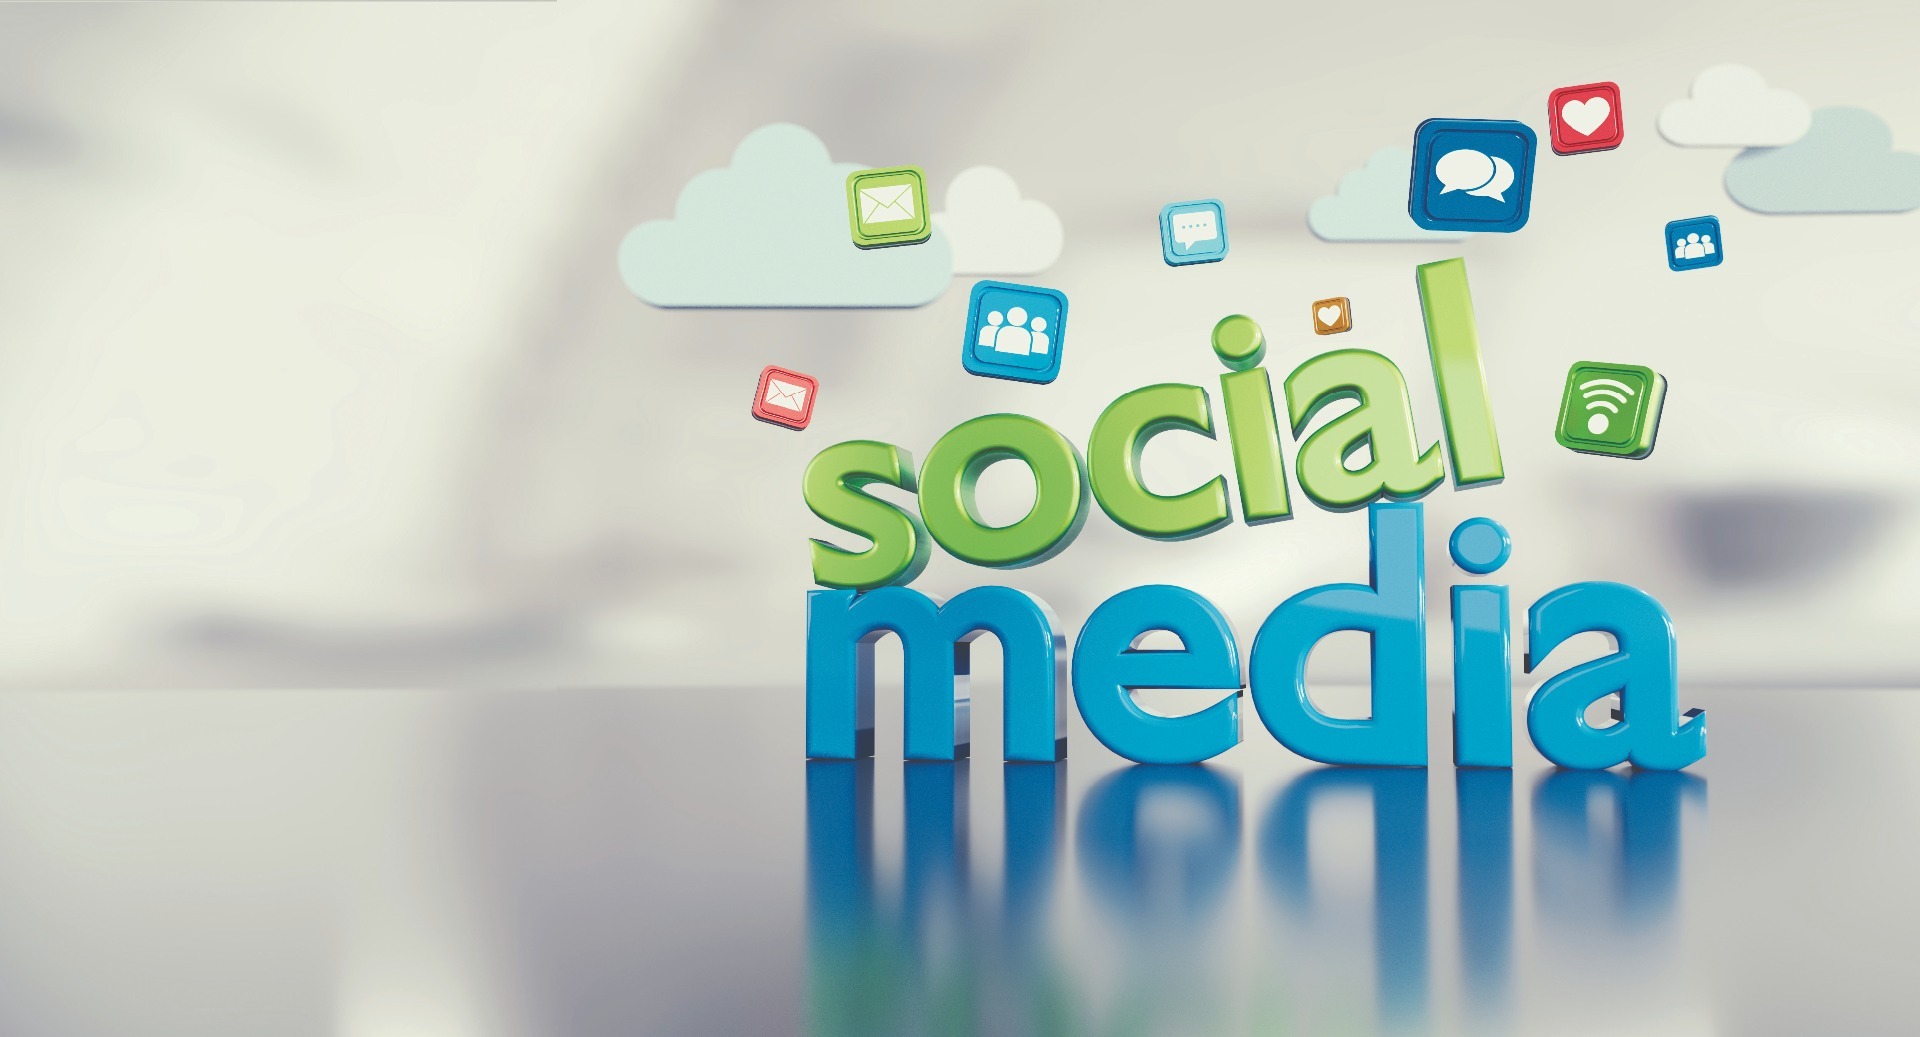 Socail Media Facebook, Instagram Twitter, Marketing Digital